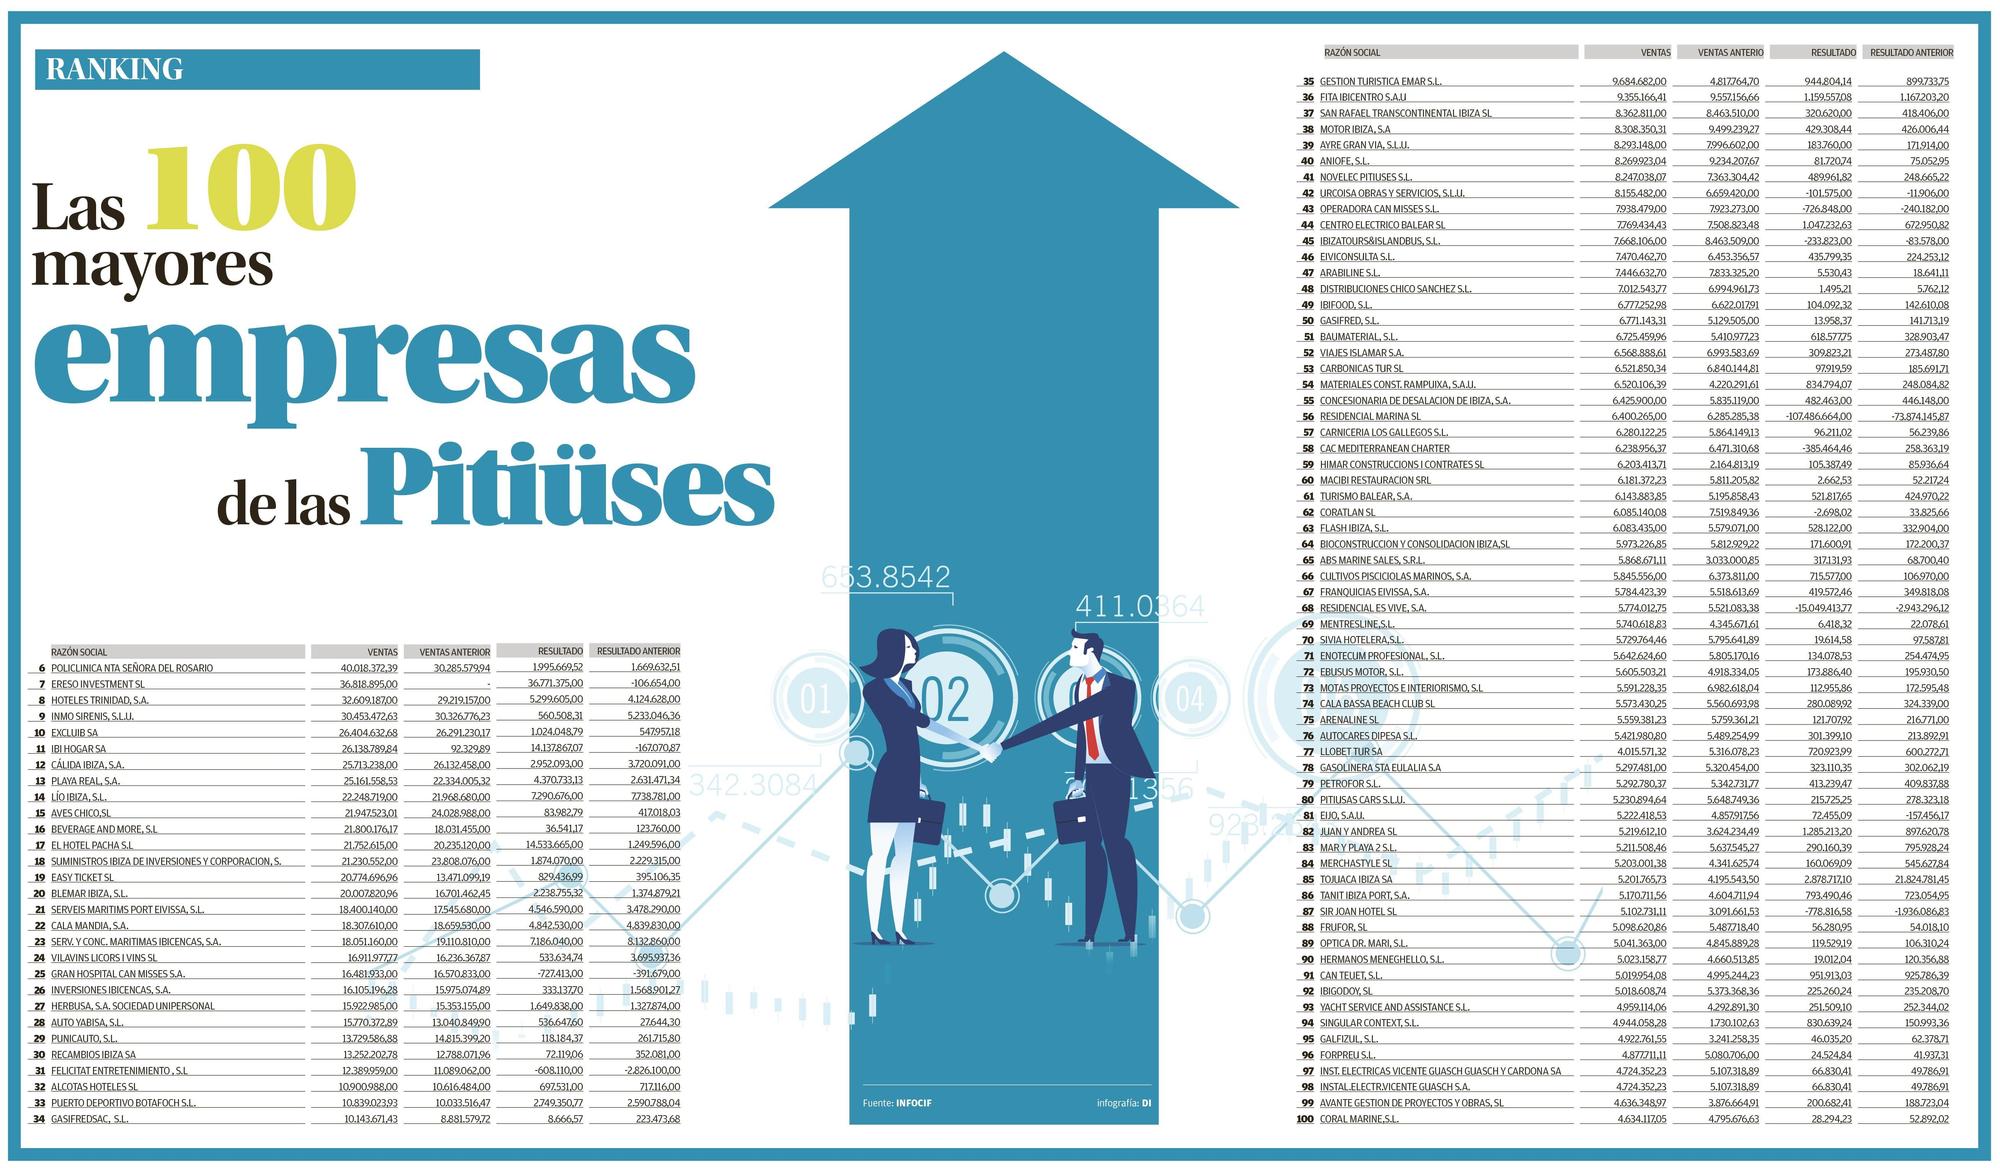 Las 100 mayores empresas de las Pitiusas